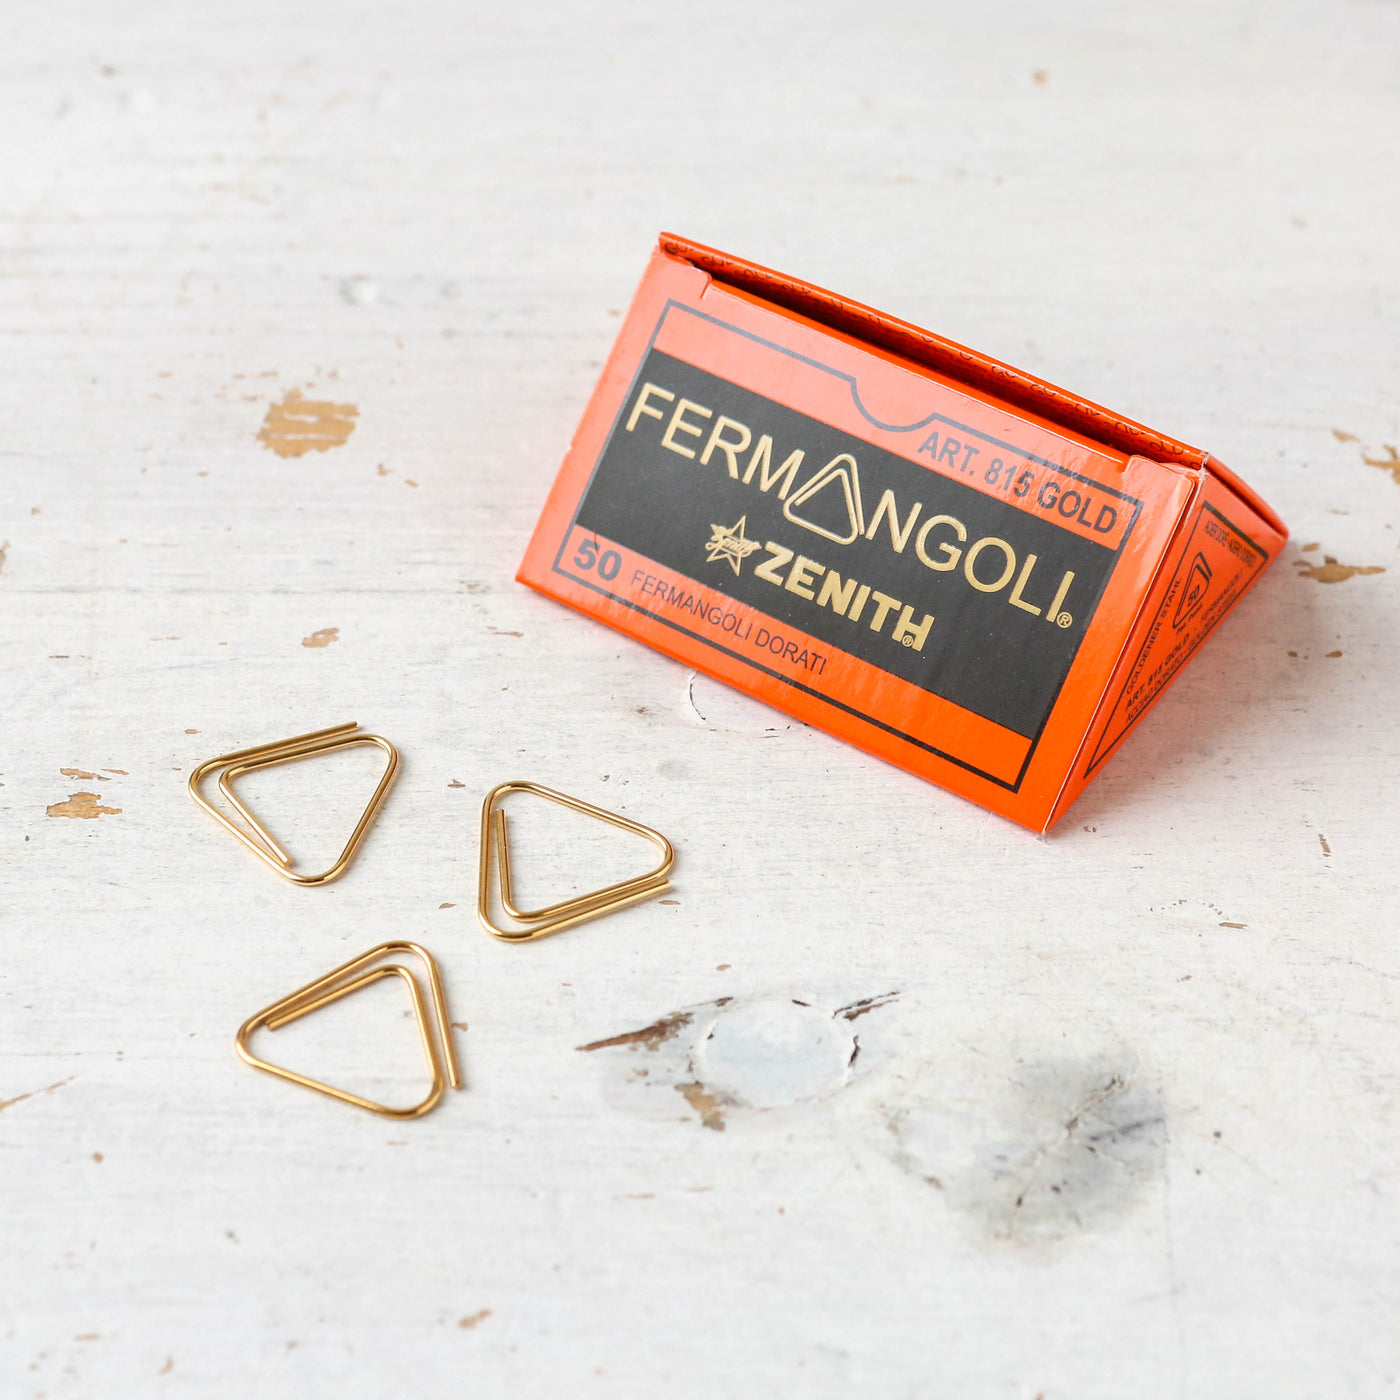 Fermangoli 815 Gold Paperclips by Zenith